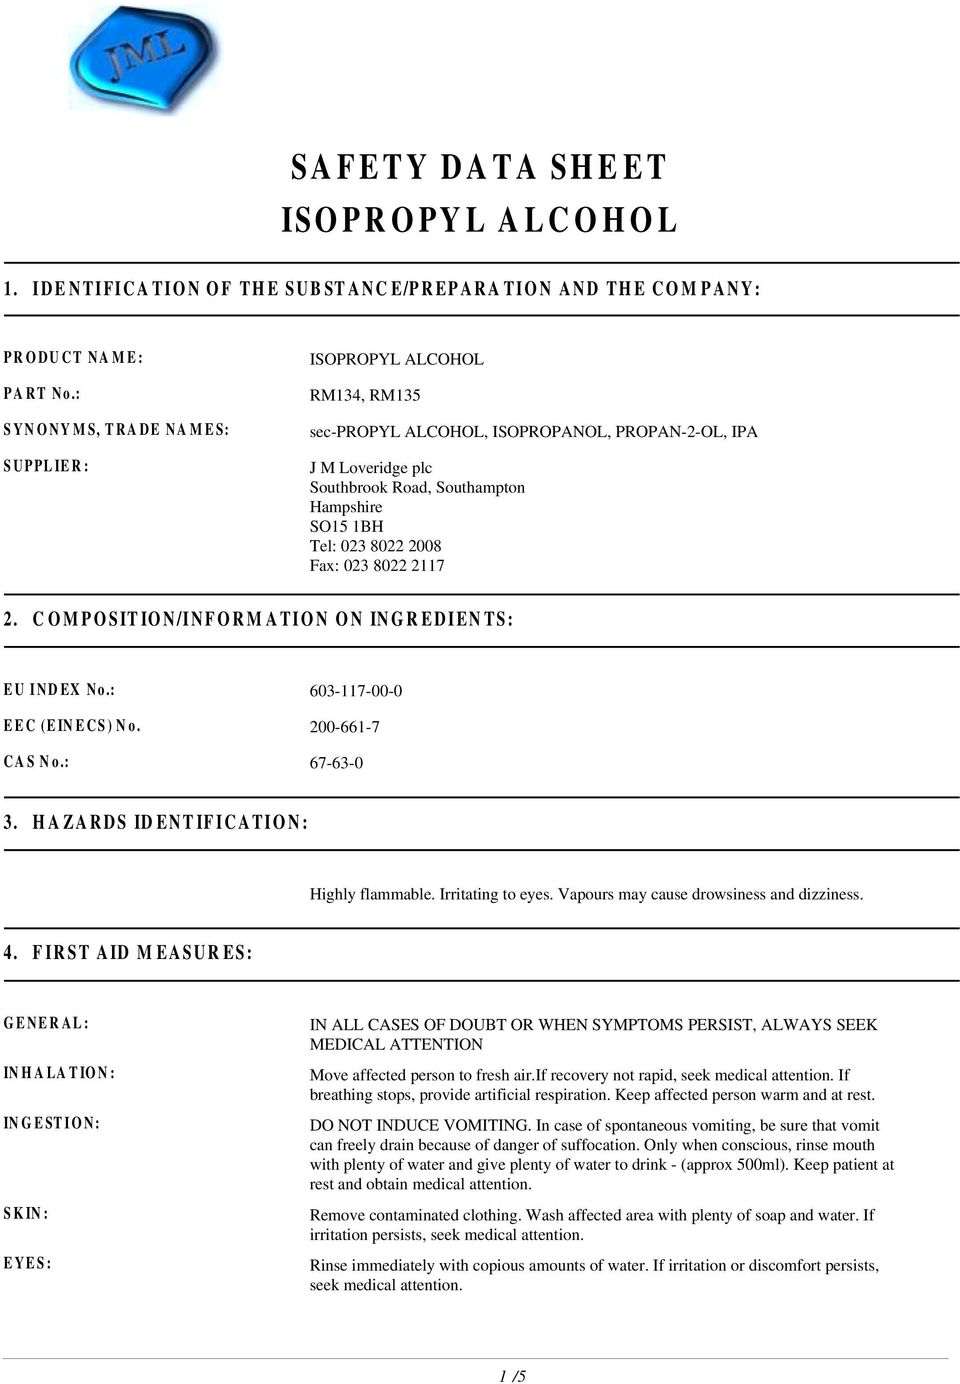 Safety Data Sheet Isopropyl Alcohol Pdf Free Download